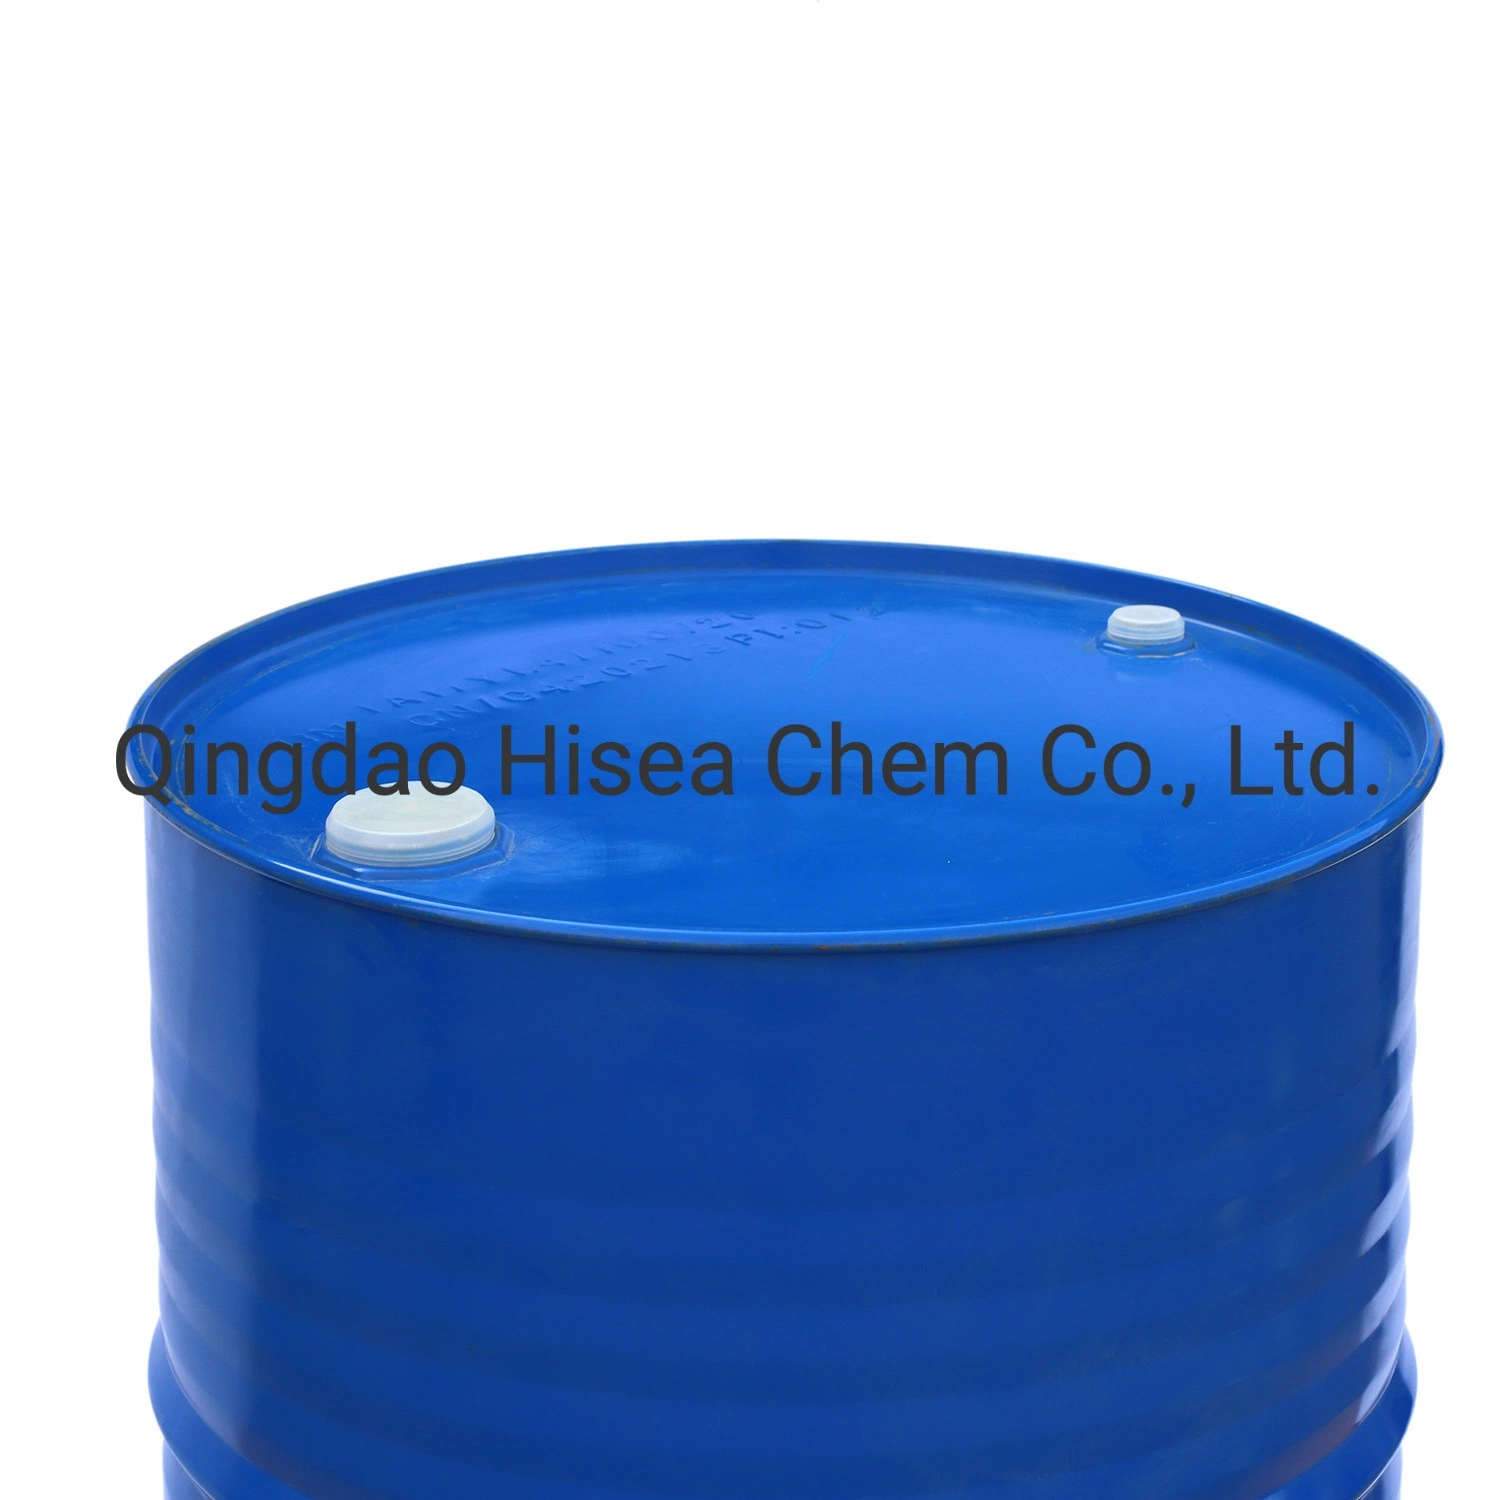 Alta qualidade de acetato de etilo 99% min grau Industrial CAS # 141-78-6